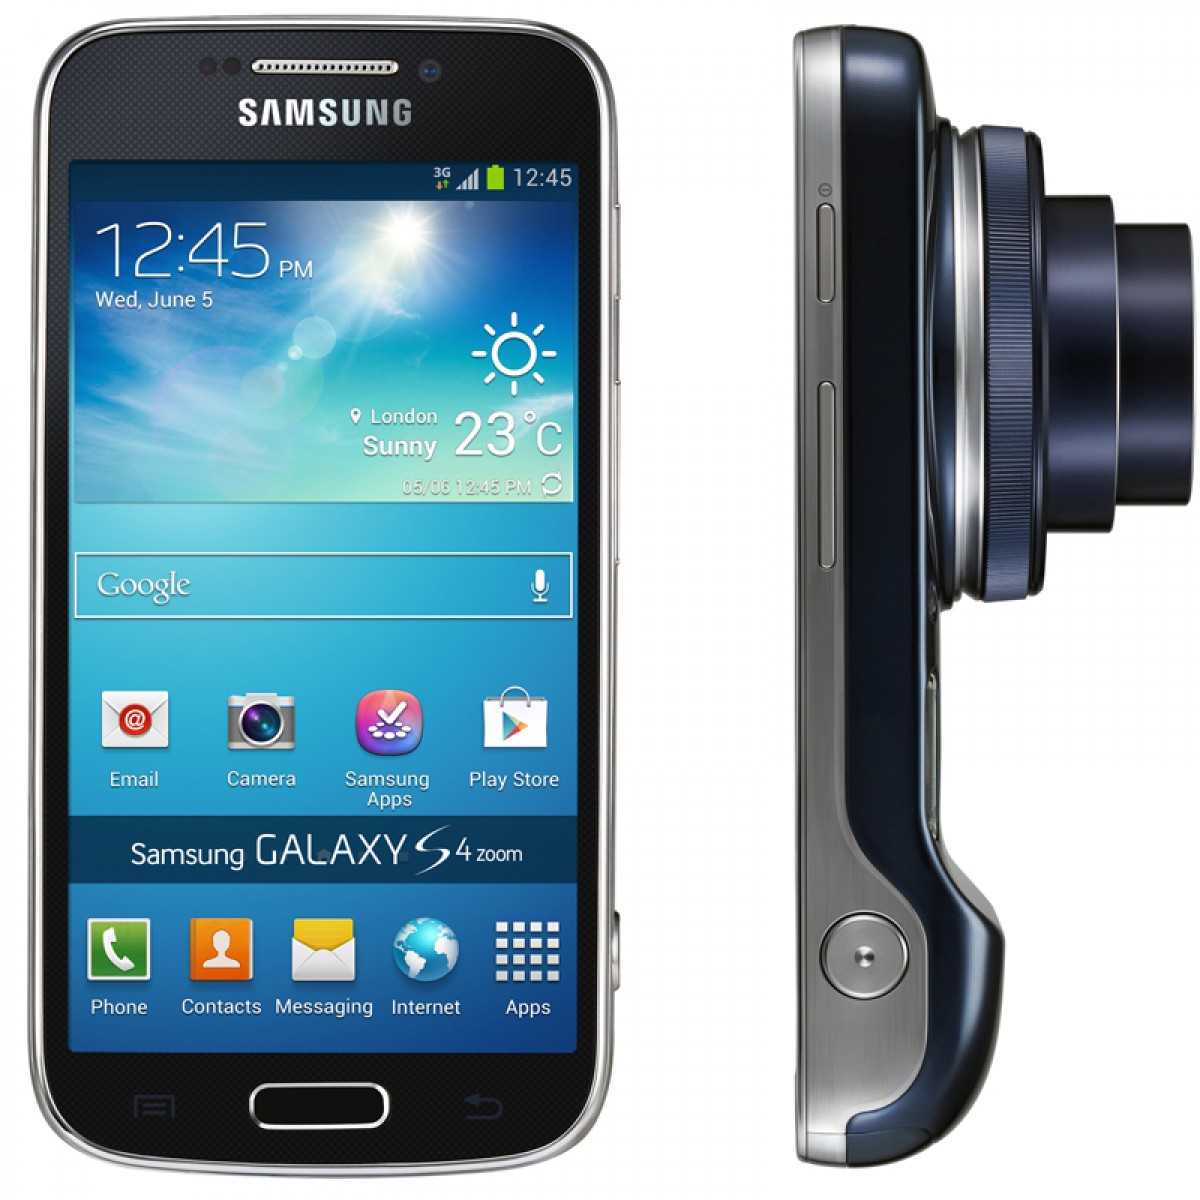 Samsung galaxy s4 zoom sm-c101 (белый) - купить , скидки, цена, отзывы, обзор, характеристики - мобильные телефоны